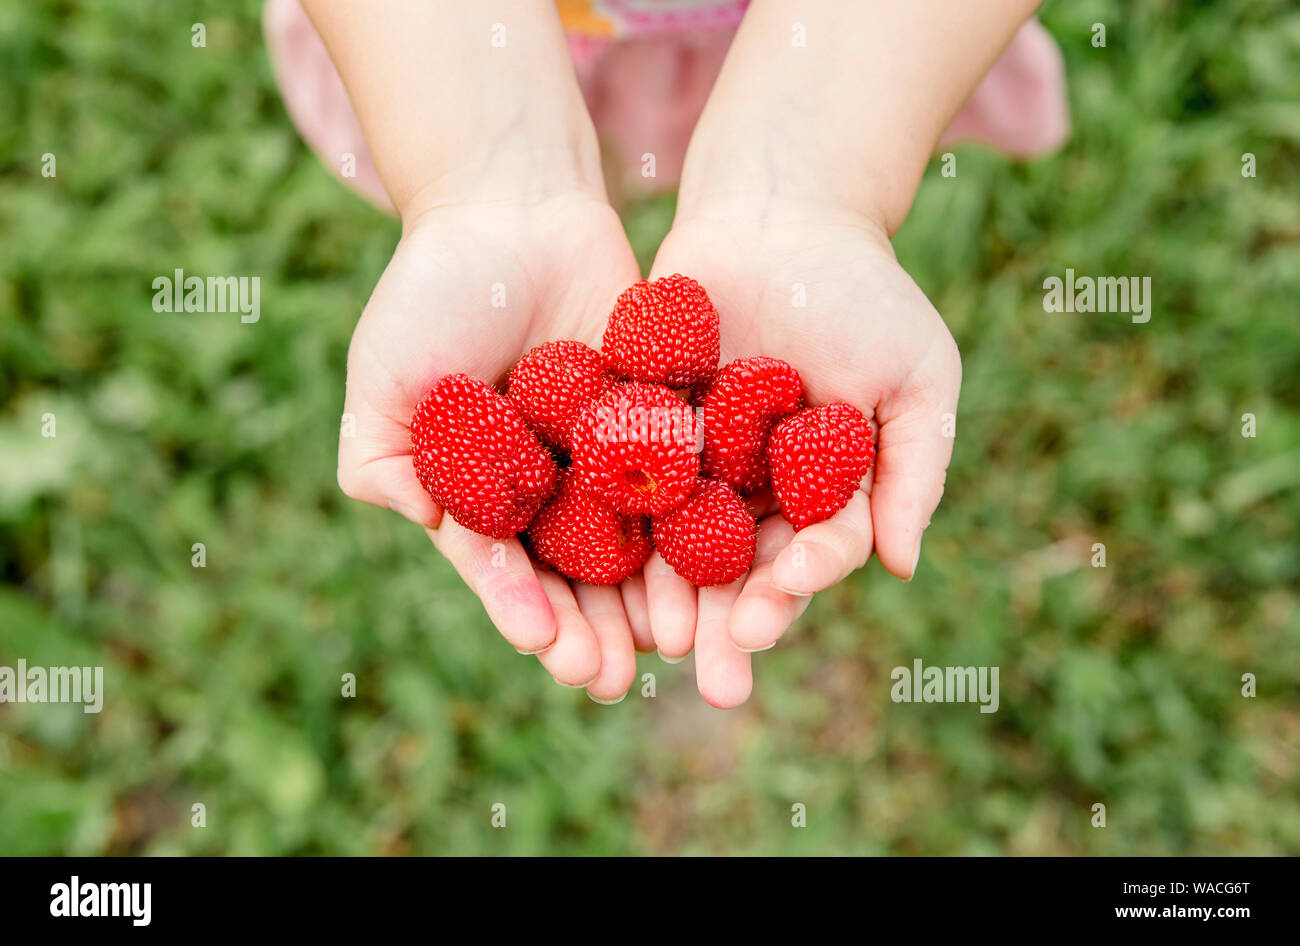 Rubus illecebrosus auch als Ballon Berry und Erdbeere Himbeere bekannt ist lecker essbare Beeren im Haus Garten, Obst sieht aus wie Erdbeere und Ra Stockfoto